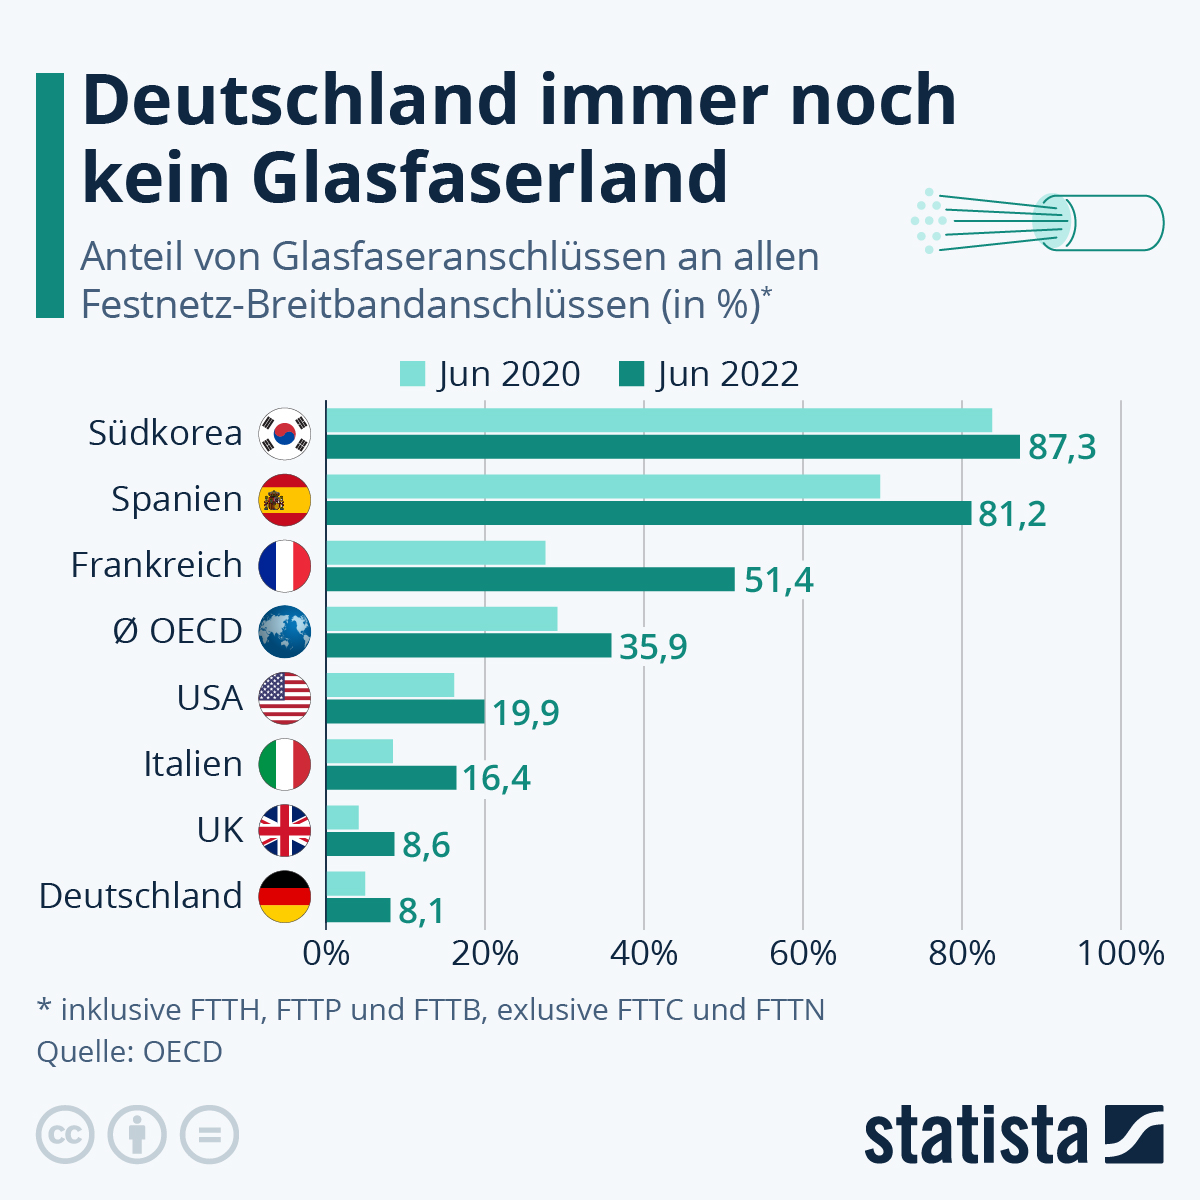 Die Grafik zeigt einen Ländervergleich der Glasfaseranschluss in den Jahren 2020 und 2022 für Deutschland, UK, Italien, USA, OECD, Frankreich, Spanien und Südkorea.